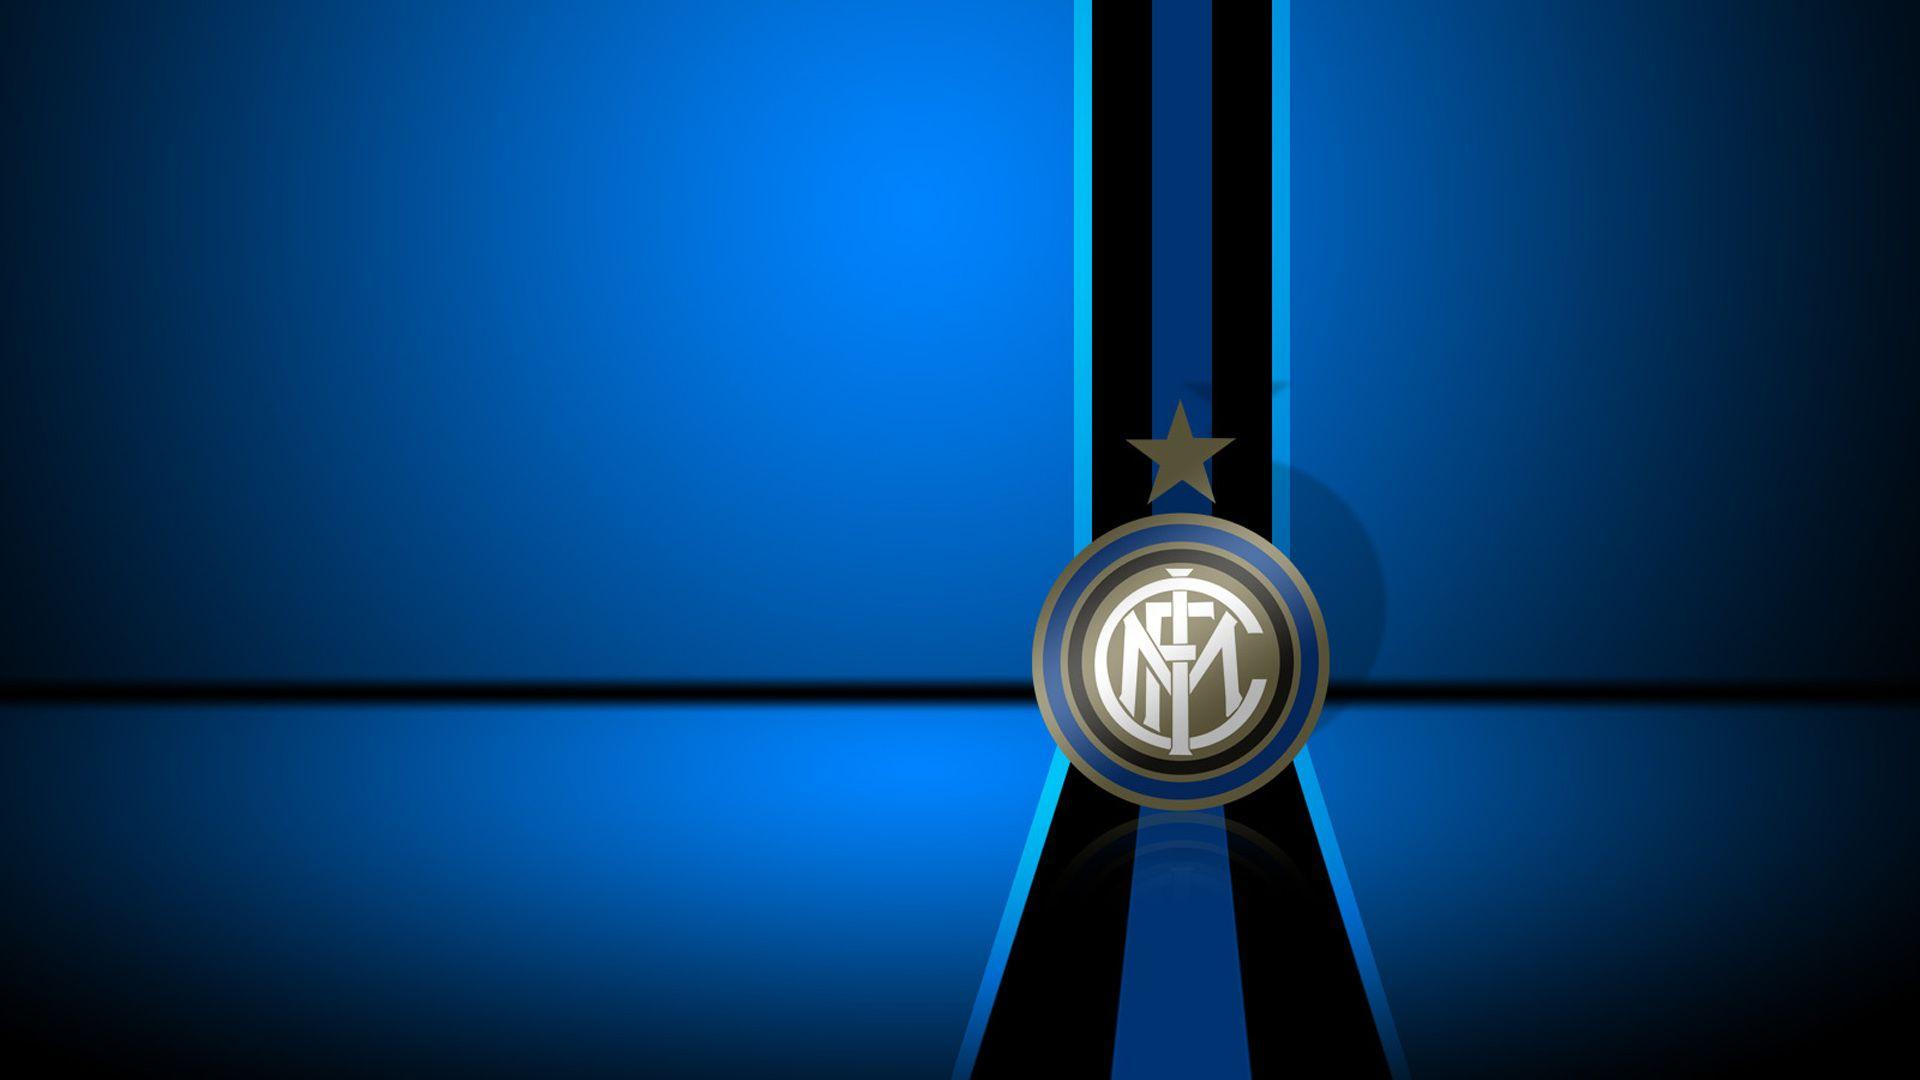 Inter Milan Logo Wallpaper Full HD